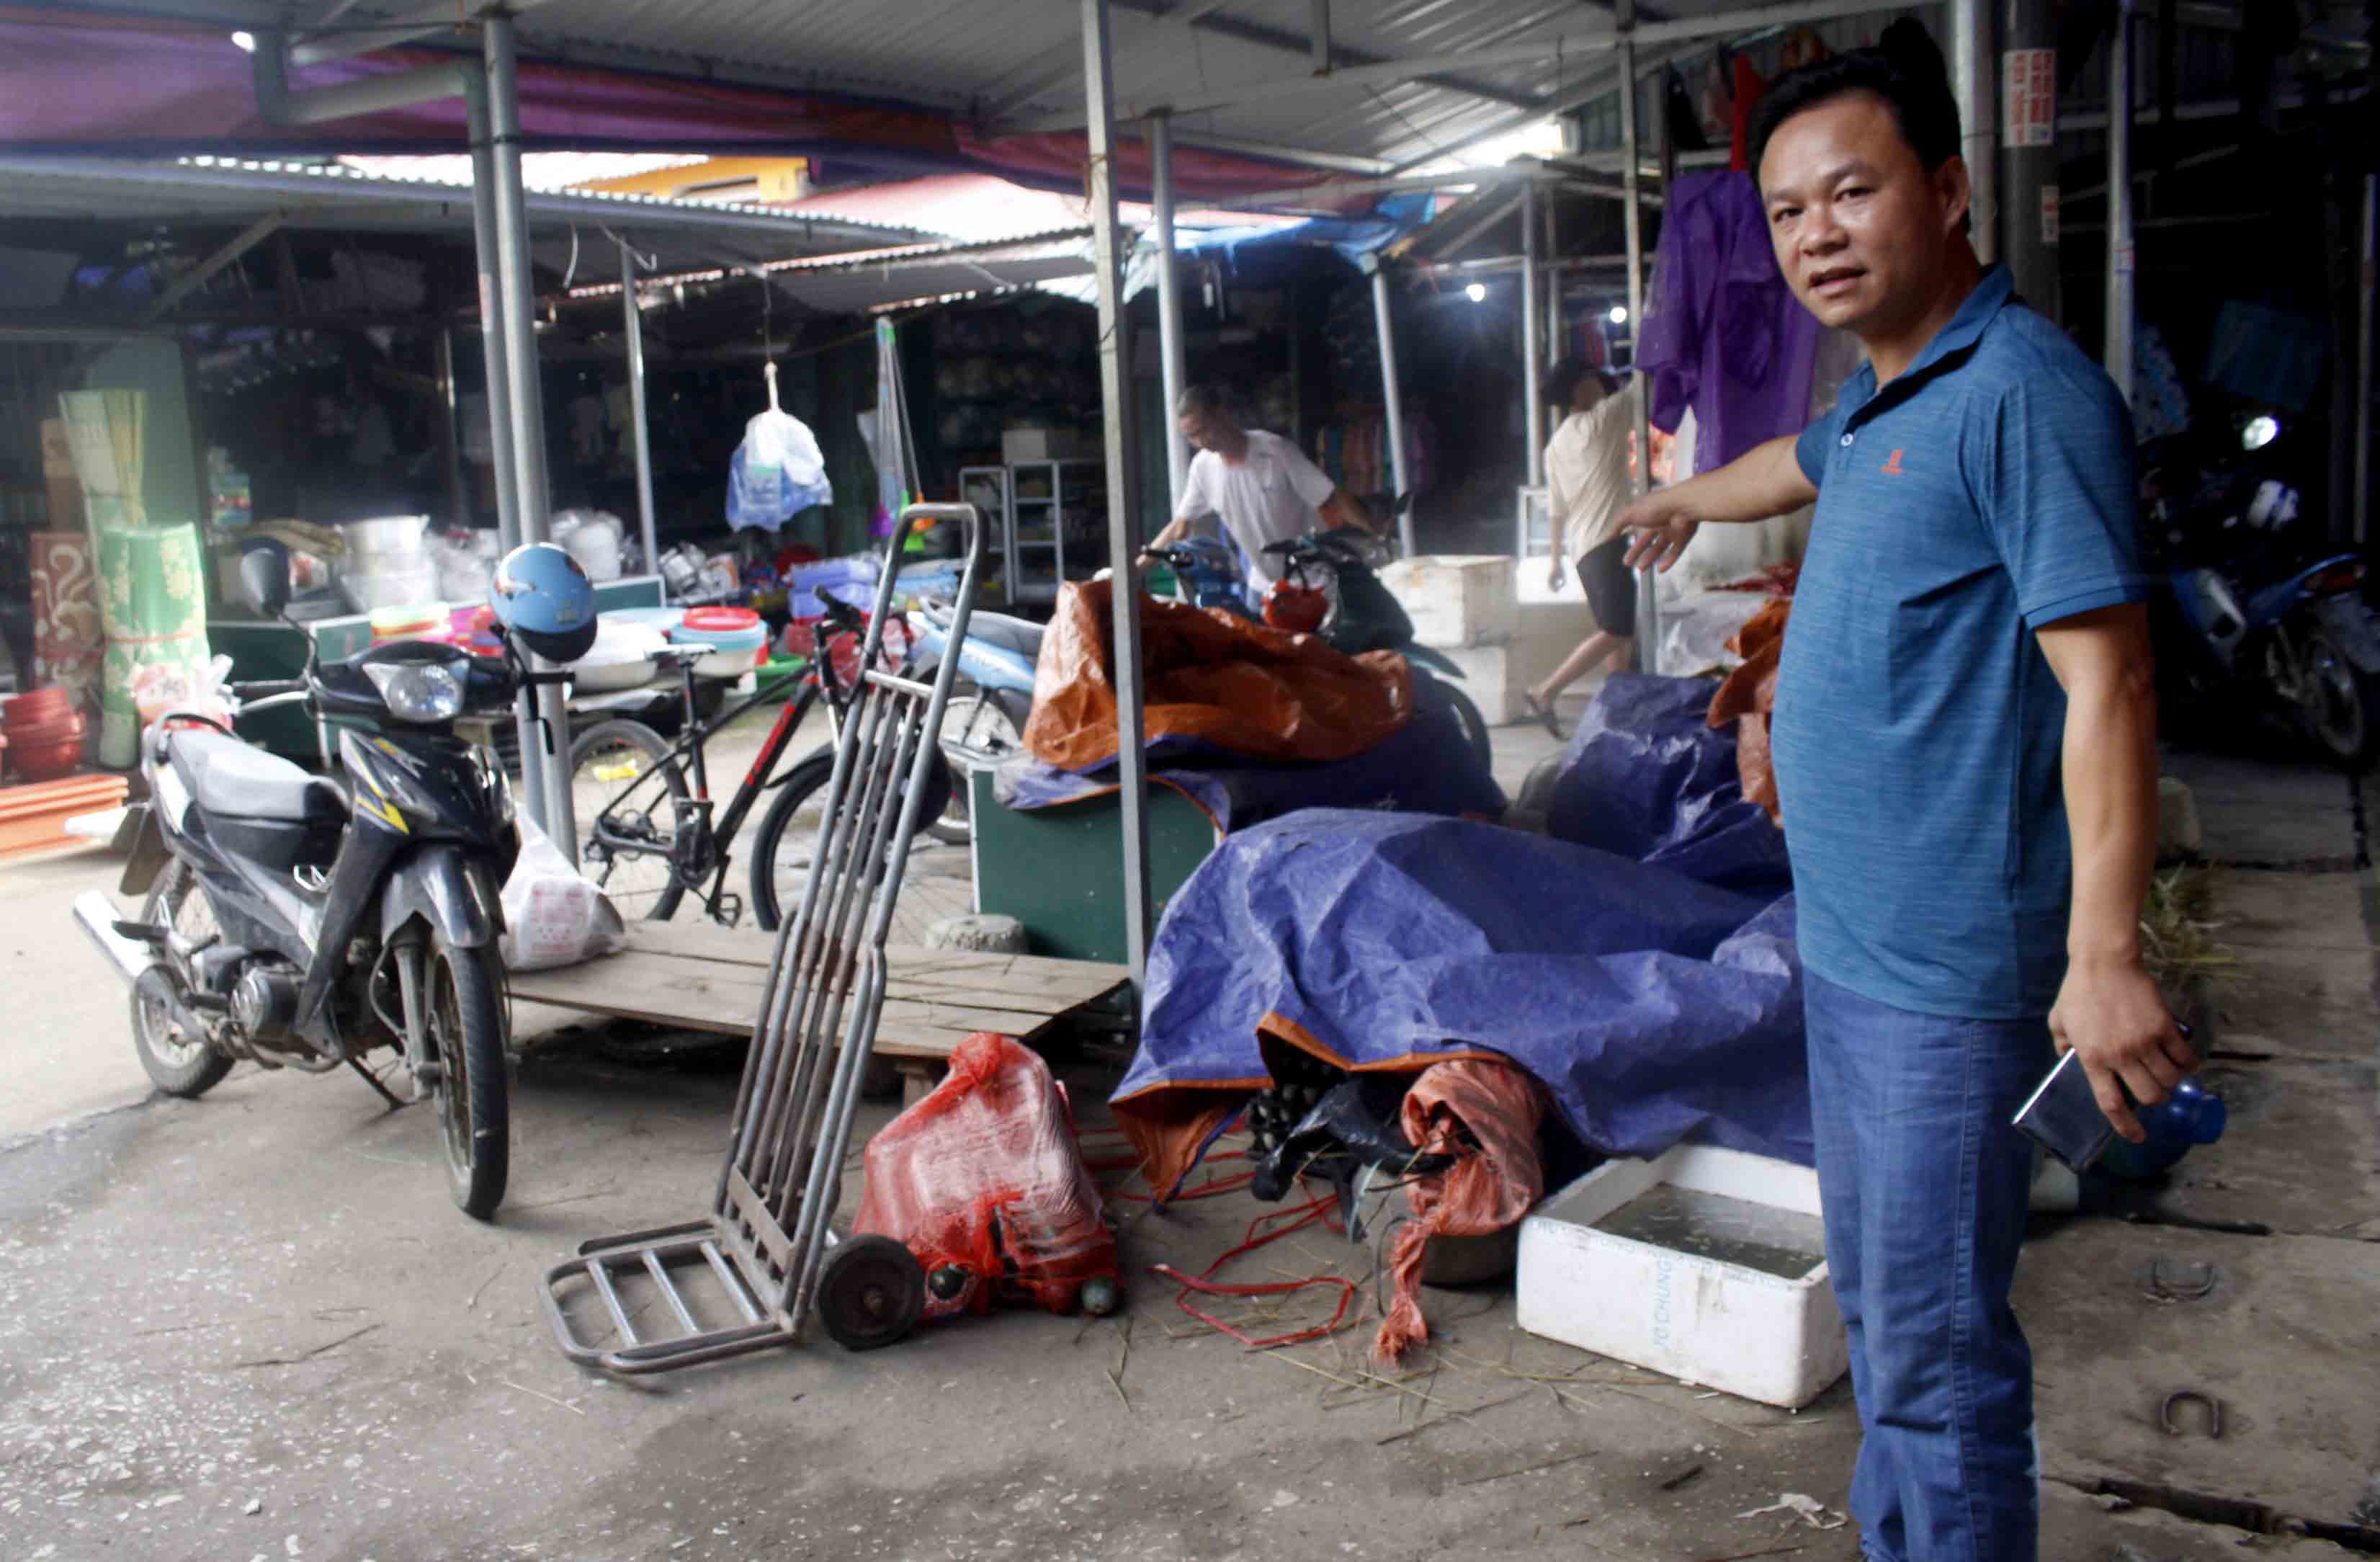 Nhiều ô bán hàng tạp hóa trong chợ huyện Than Uyên bị trả lại trở thành nơi chứa đồ đạc, để xe của các hộ còn kinh doanh. 